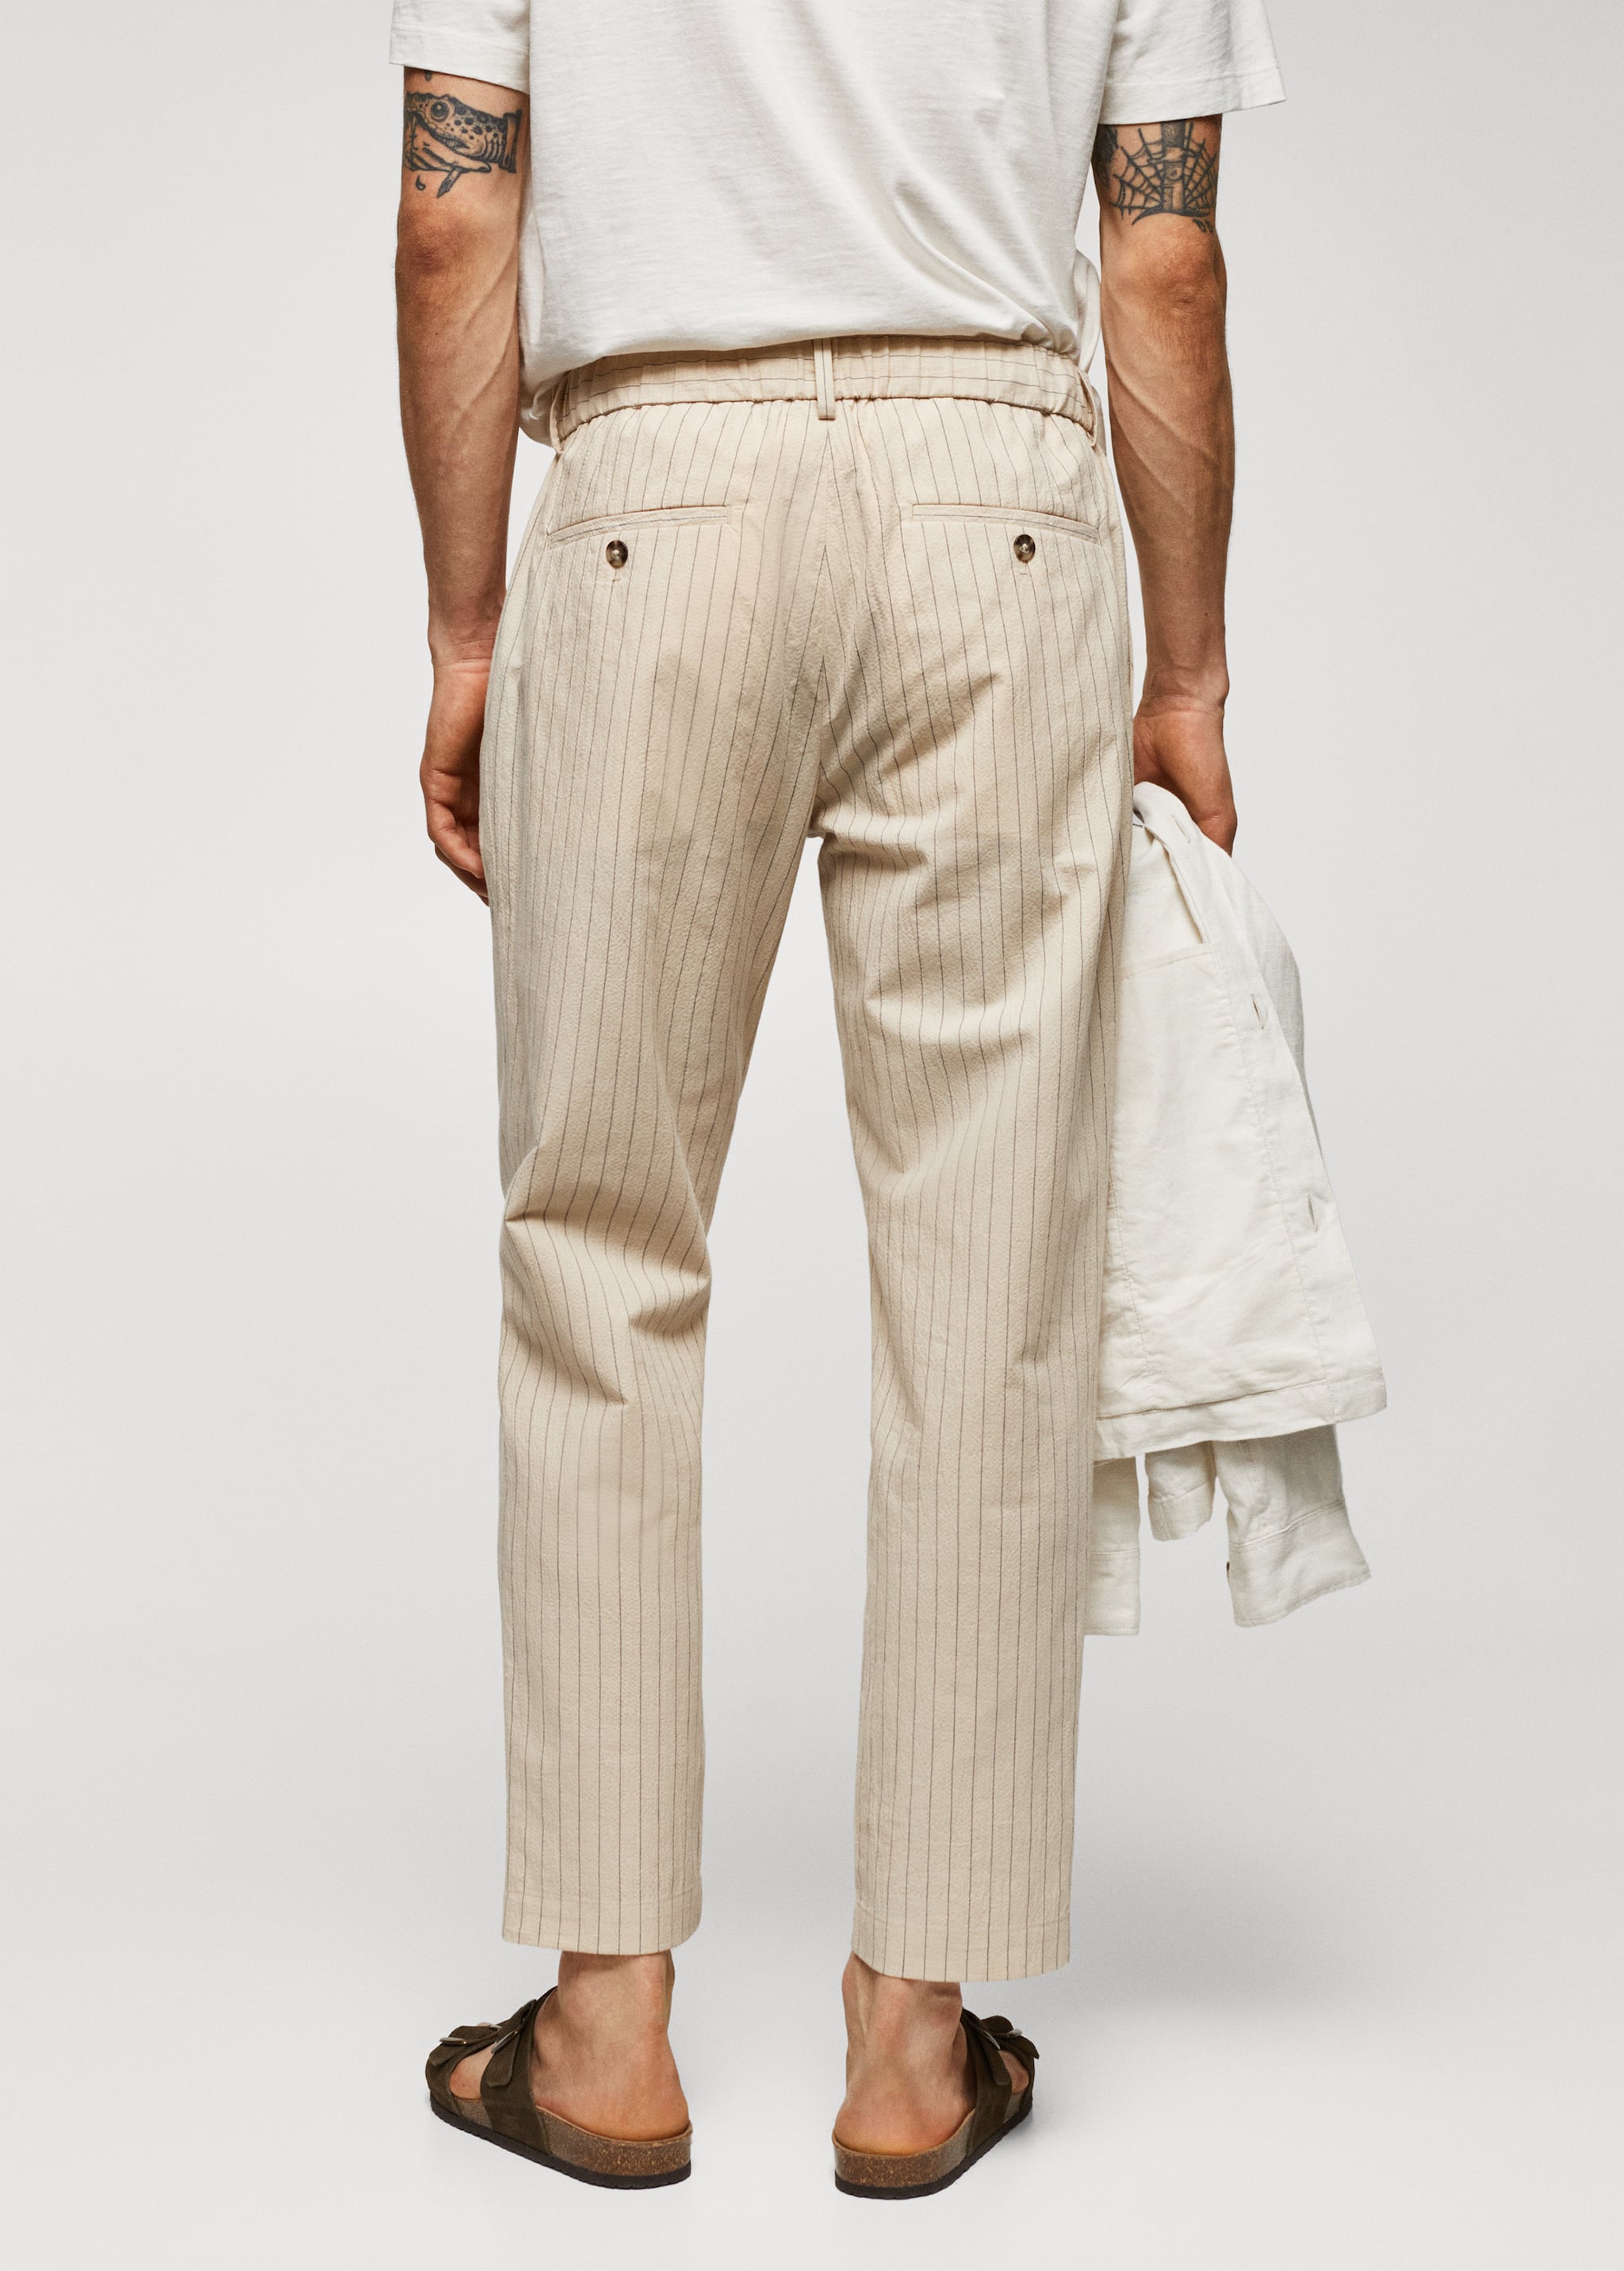 Pantalón algodón-lino seersucker - Reverso del artículo